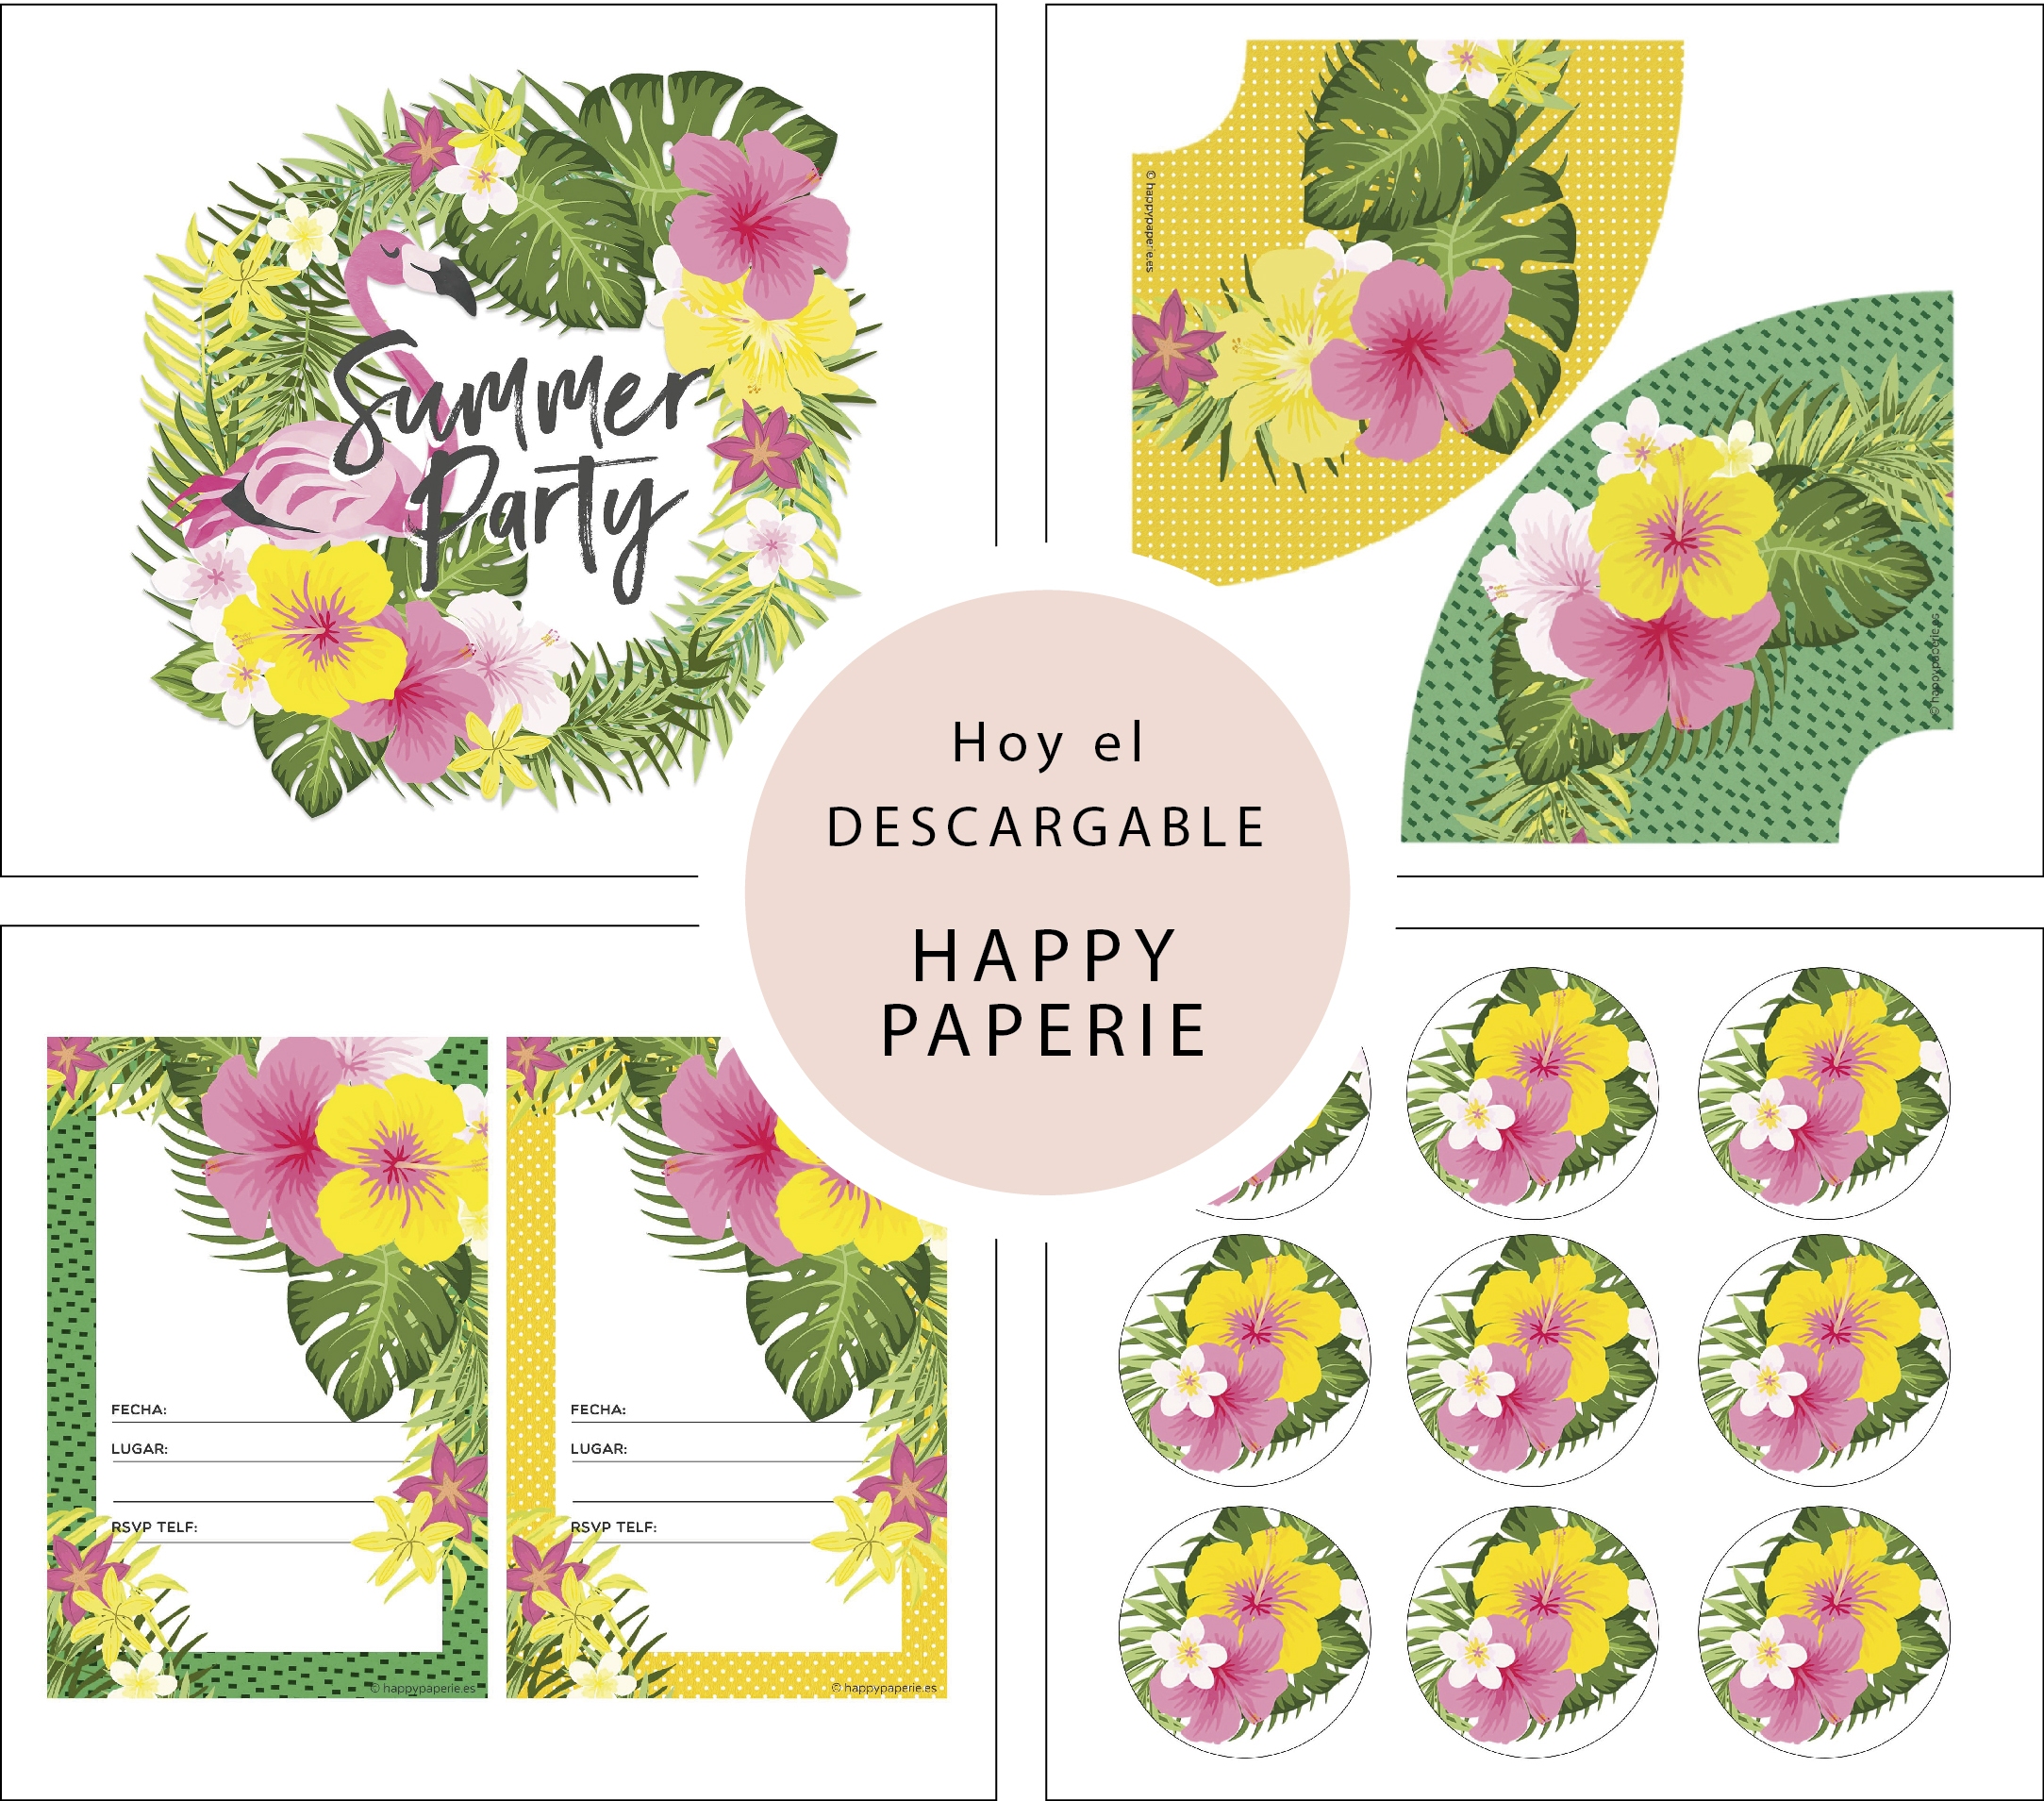 Conocemos a Happy Paperie con imprimible de regalo